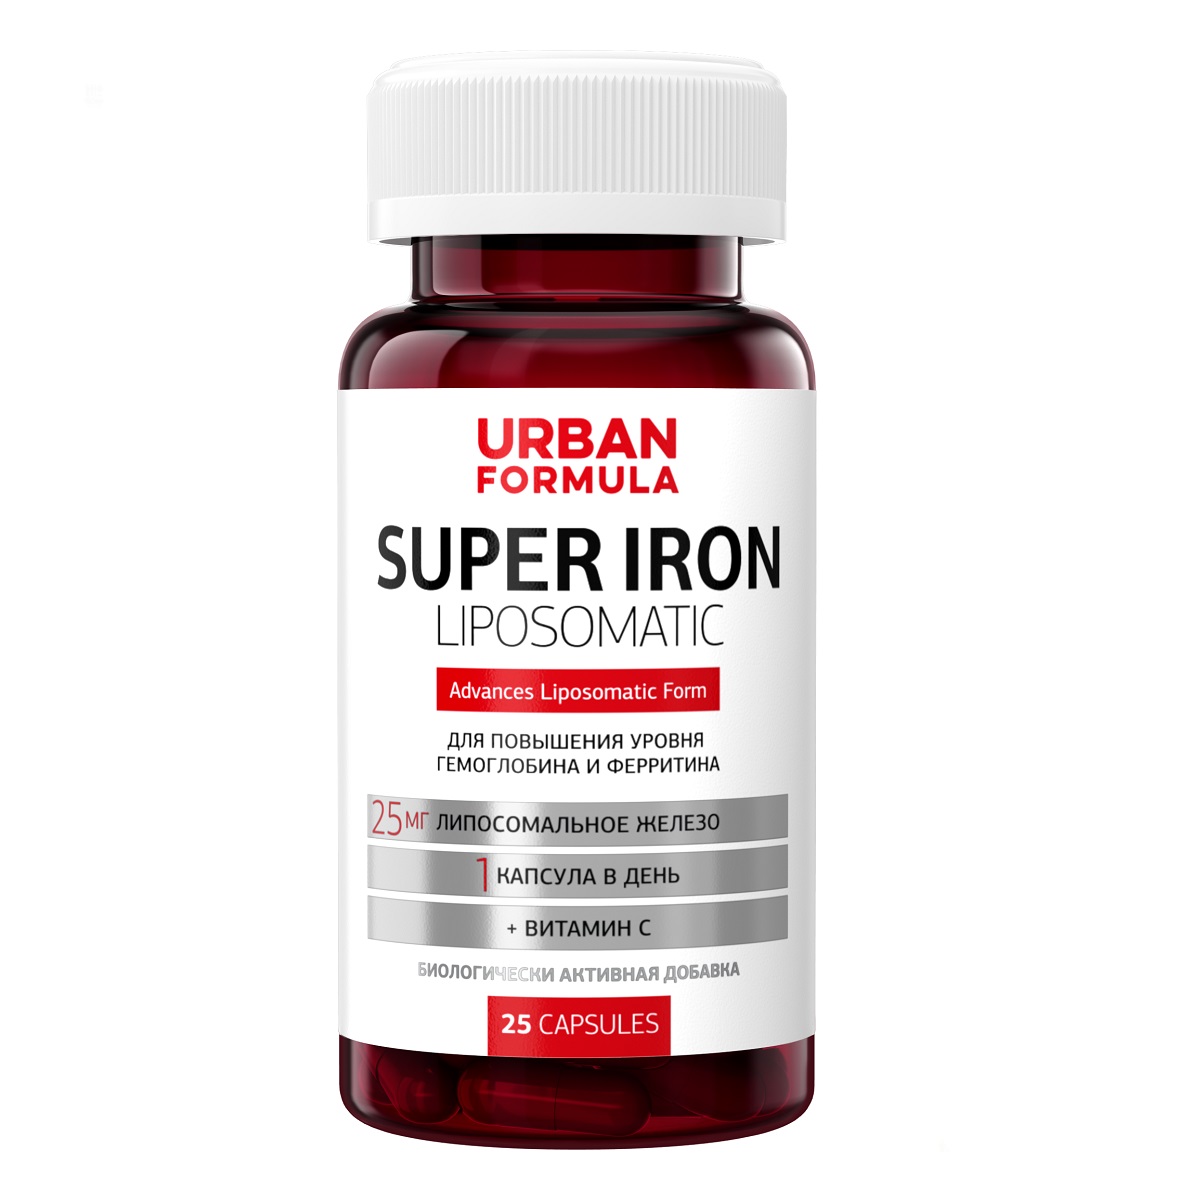 Urban Formula Комплекс Super Iron для повышения уровня гемоглобина и ферритина, 25 капсул (Urban Formula, Forte) urban formula super iron